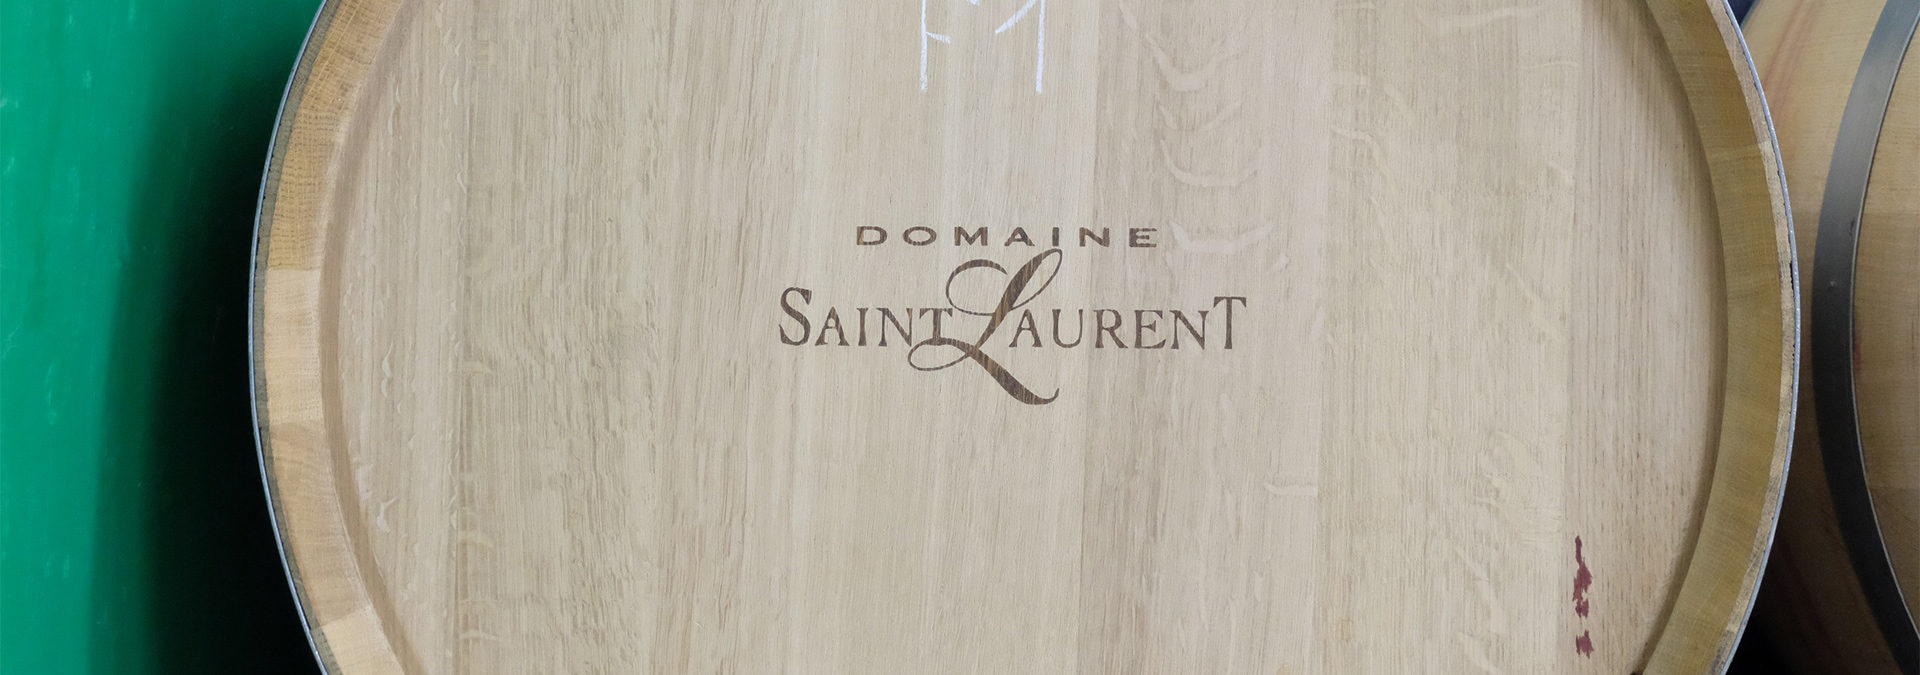 Domaine Saint-Laurent